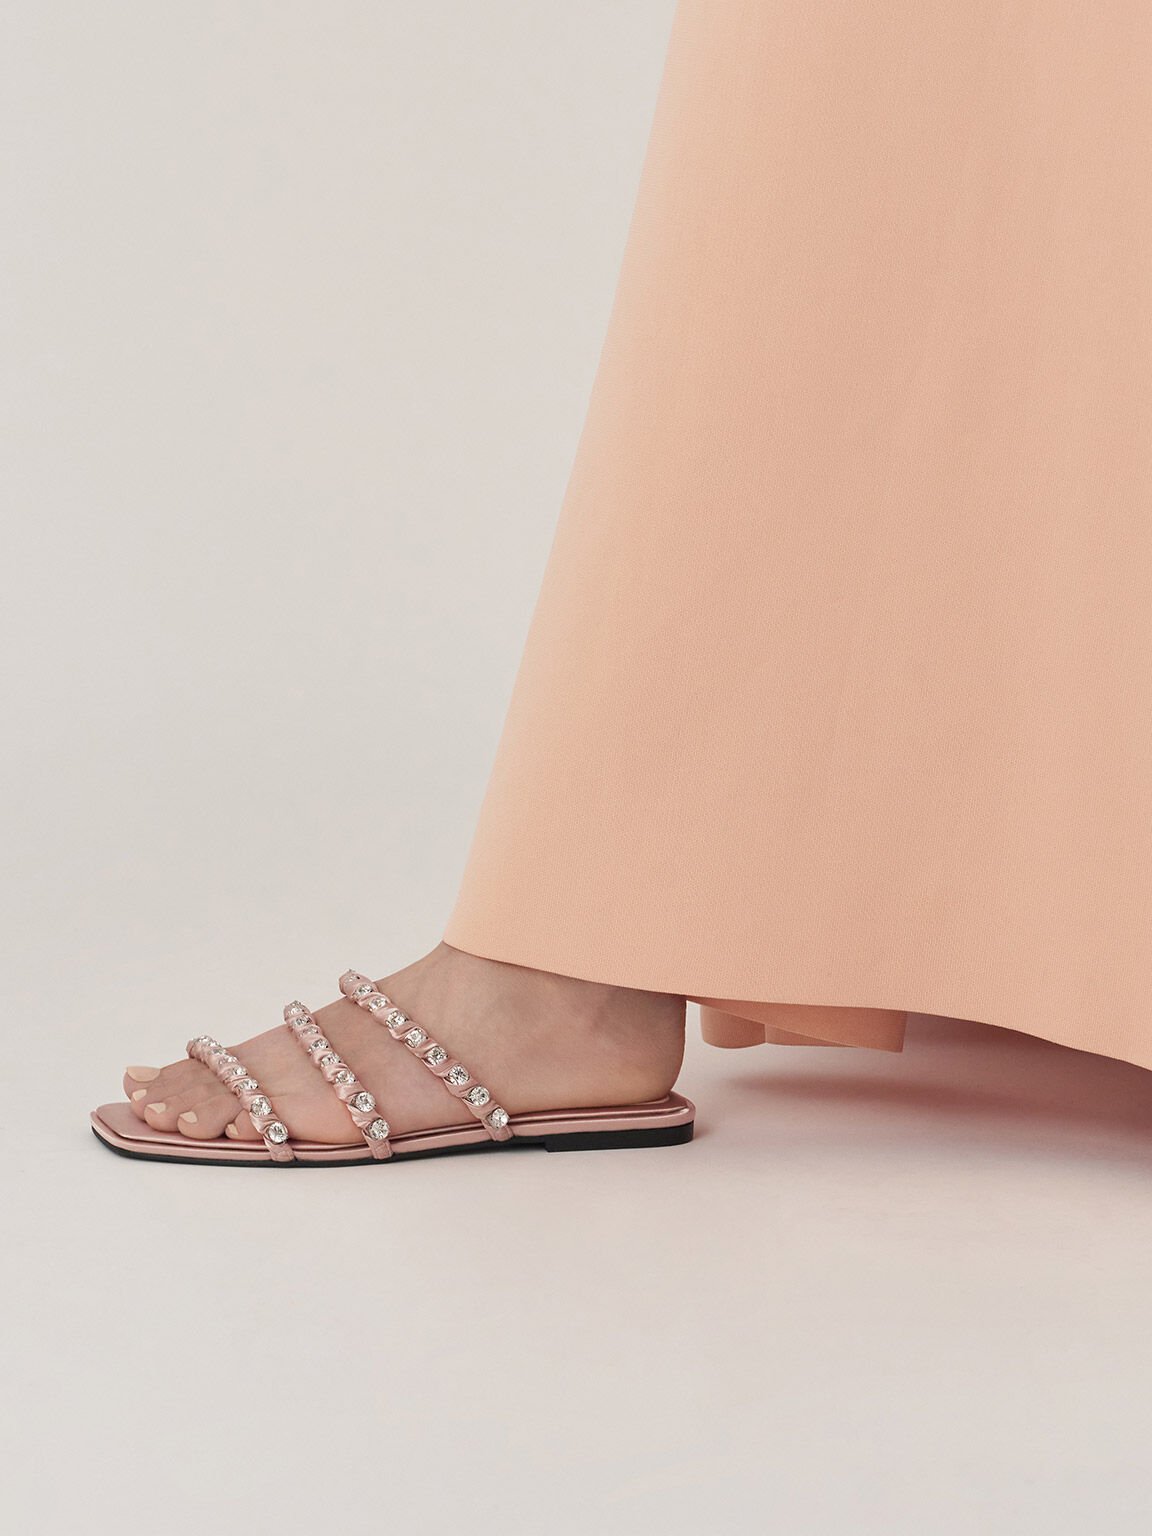 Goldie Recycled Polyester Gem-Encrusted Slide Sandals, Light Pink, hi-res